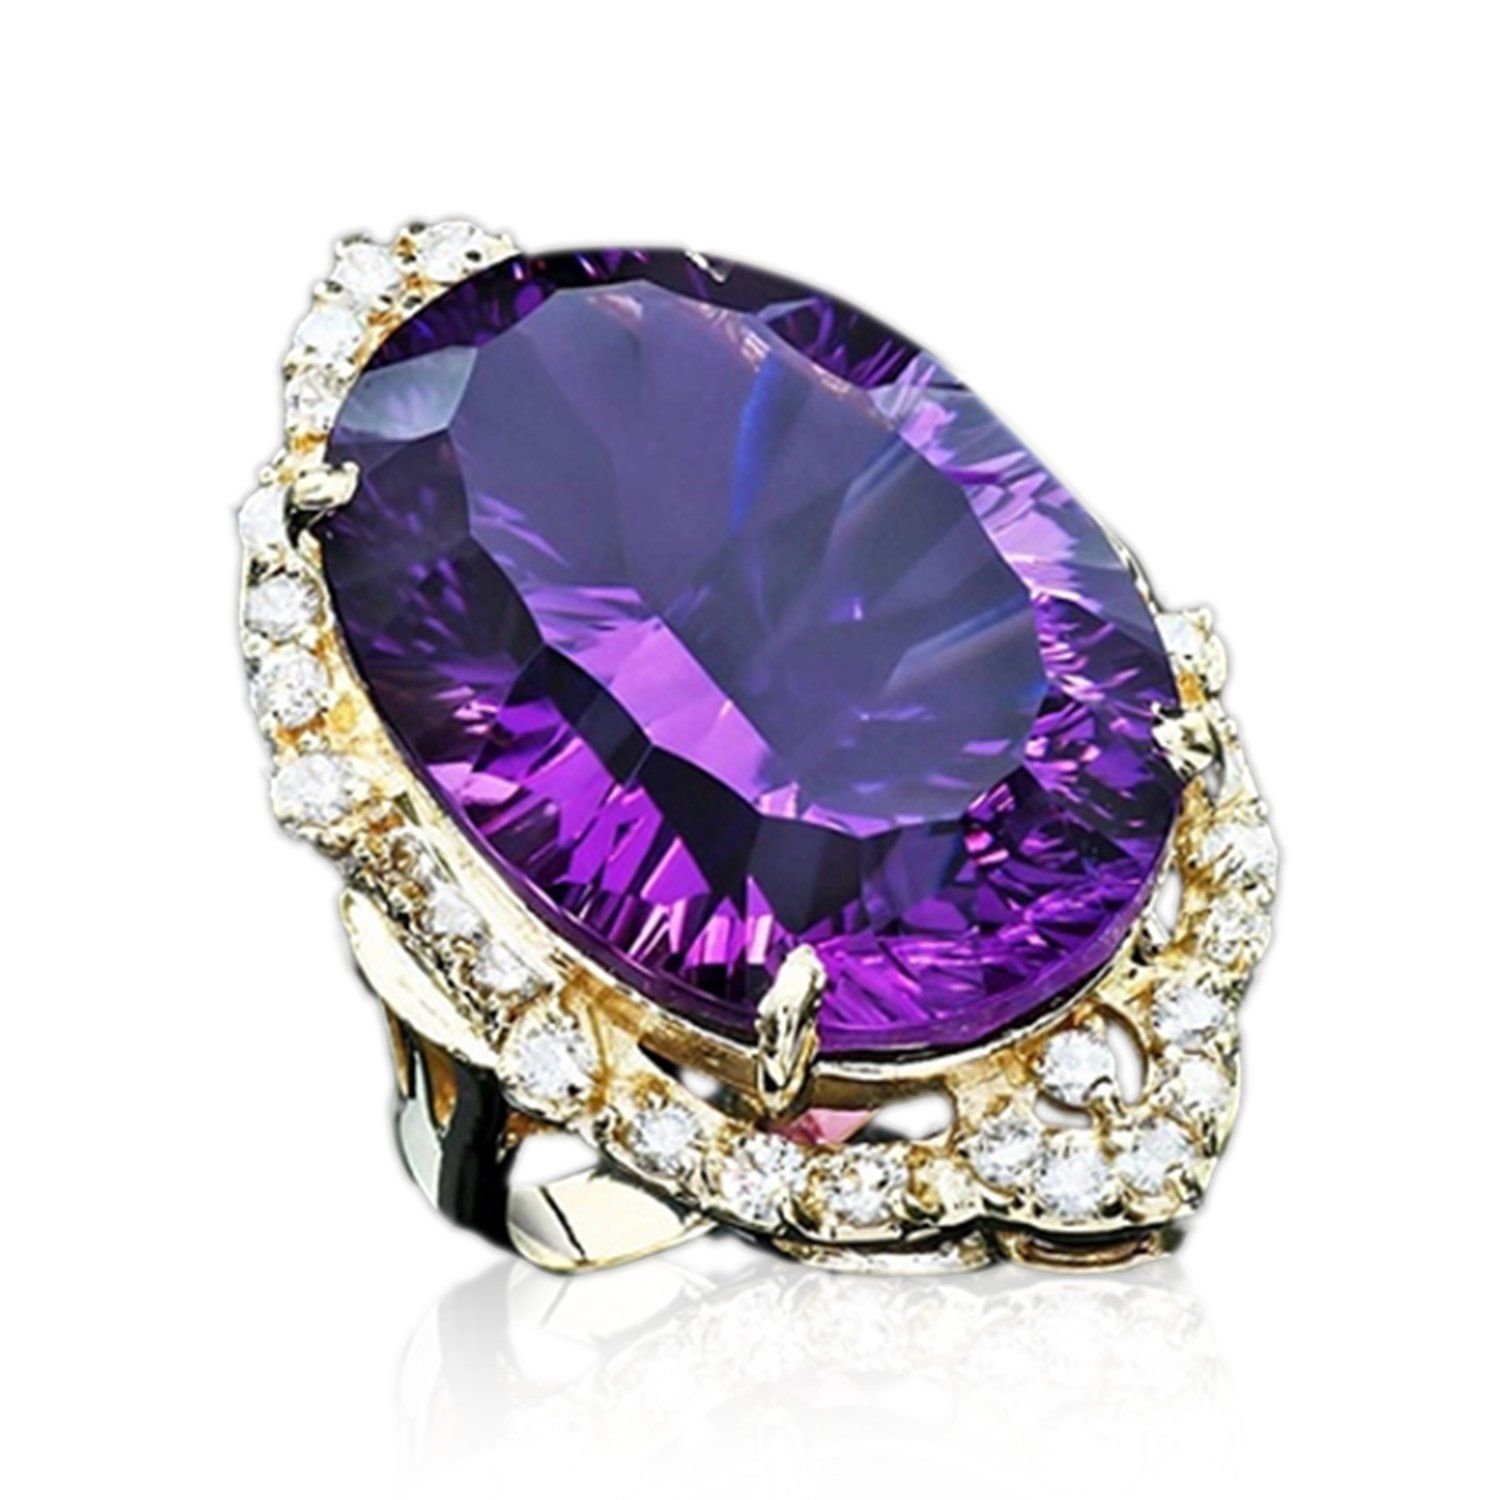 Аметист дорогой. Аметист и фиолетовый сапфир. Фиолетовый сапфир камень. Аметист камень в ювелирных изделиях. Кольцо с фиолетовым камнем.